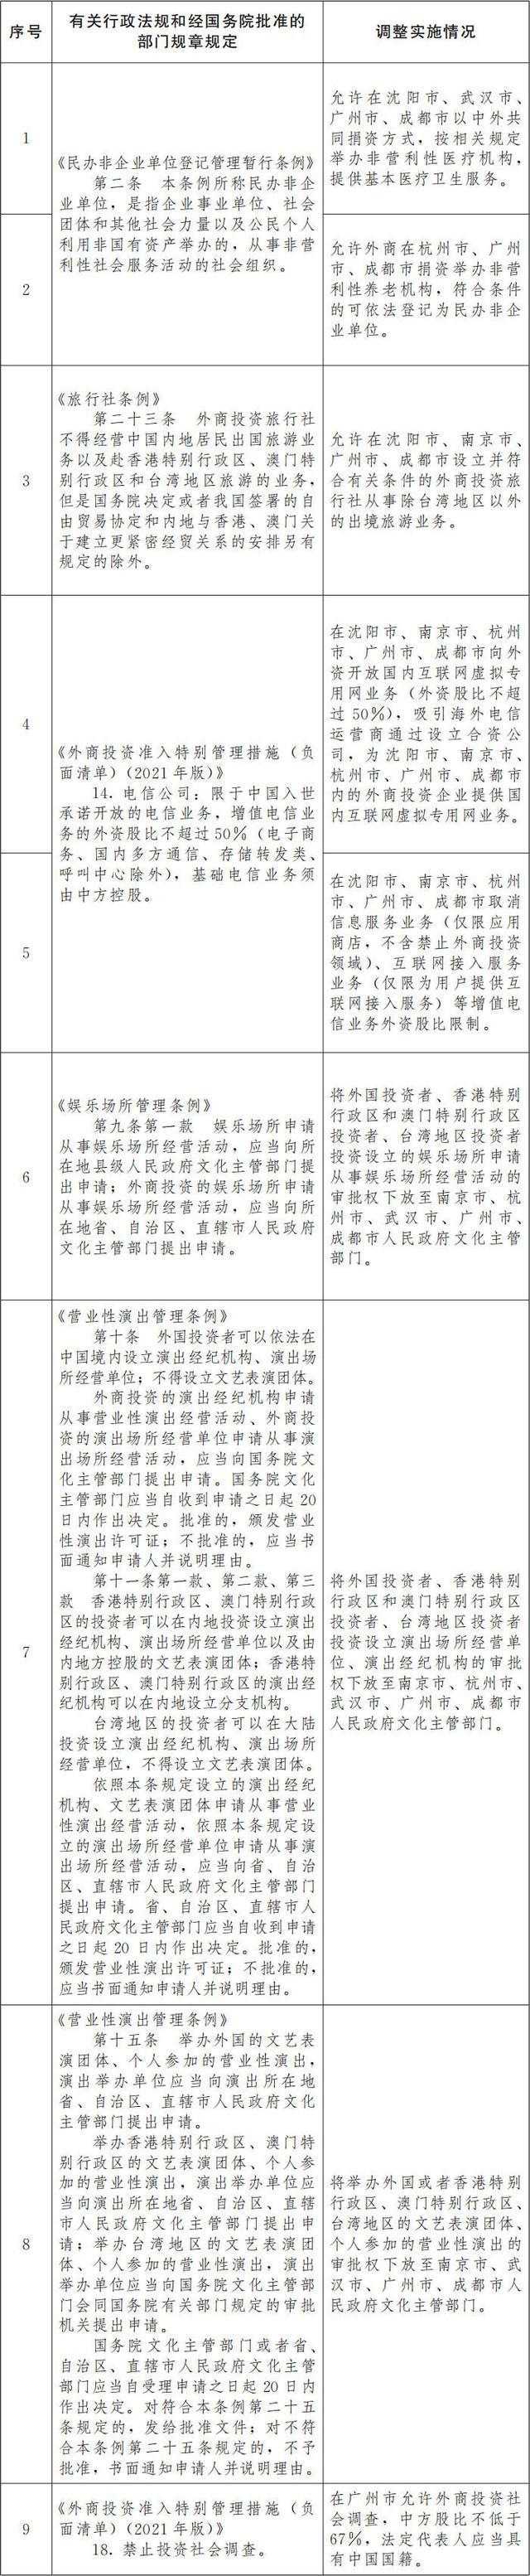 国务院批复中涉南京的有这些信息